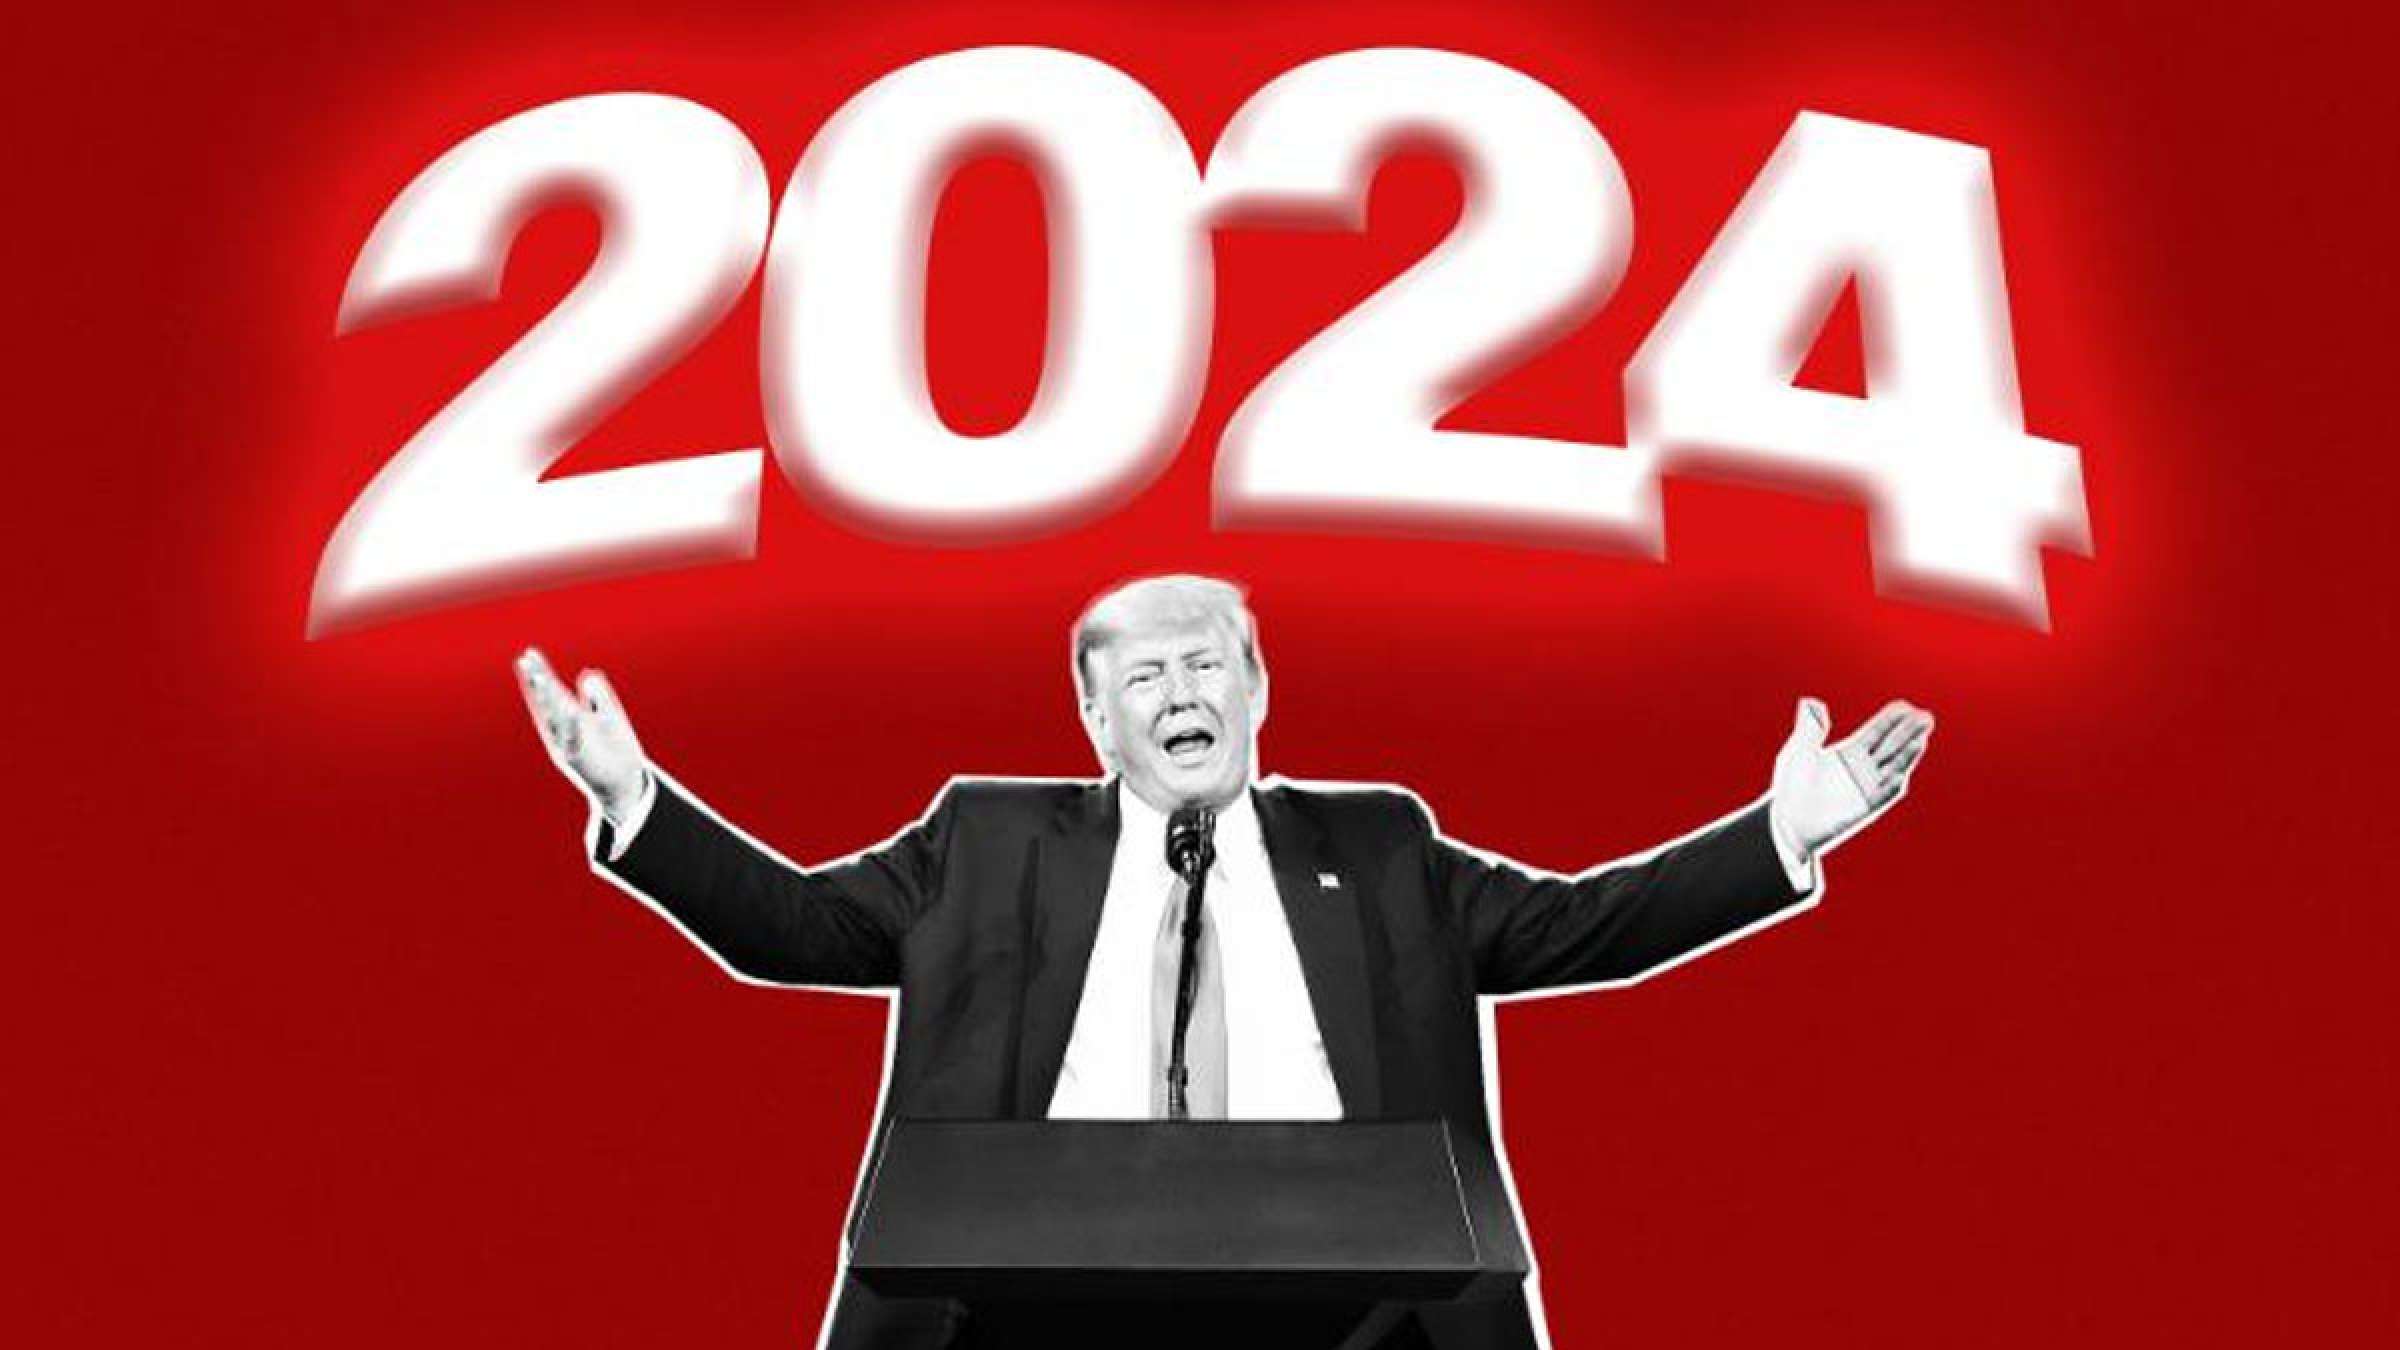 خبر-آمریکا-ترامپ-به-احتمال-۹۹-۱۰۰-درصد-انتخابات-ریاست-جمهوری-۲۰۲۴-نامزد-می-شود